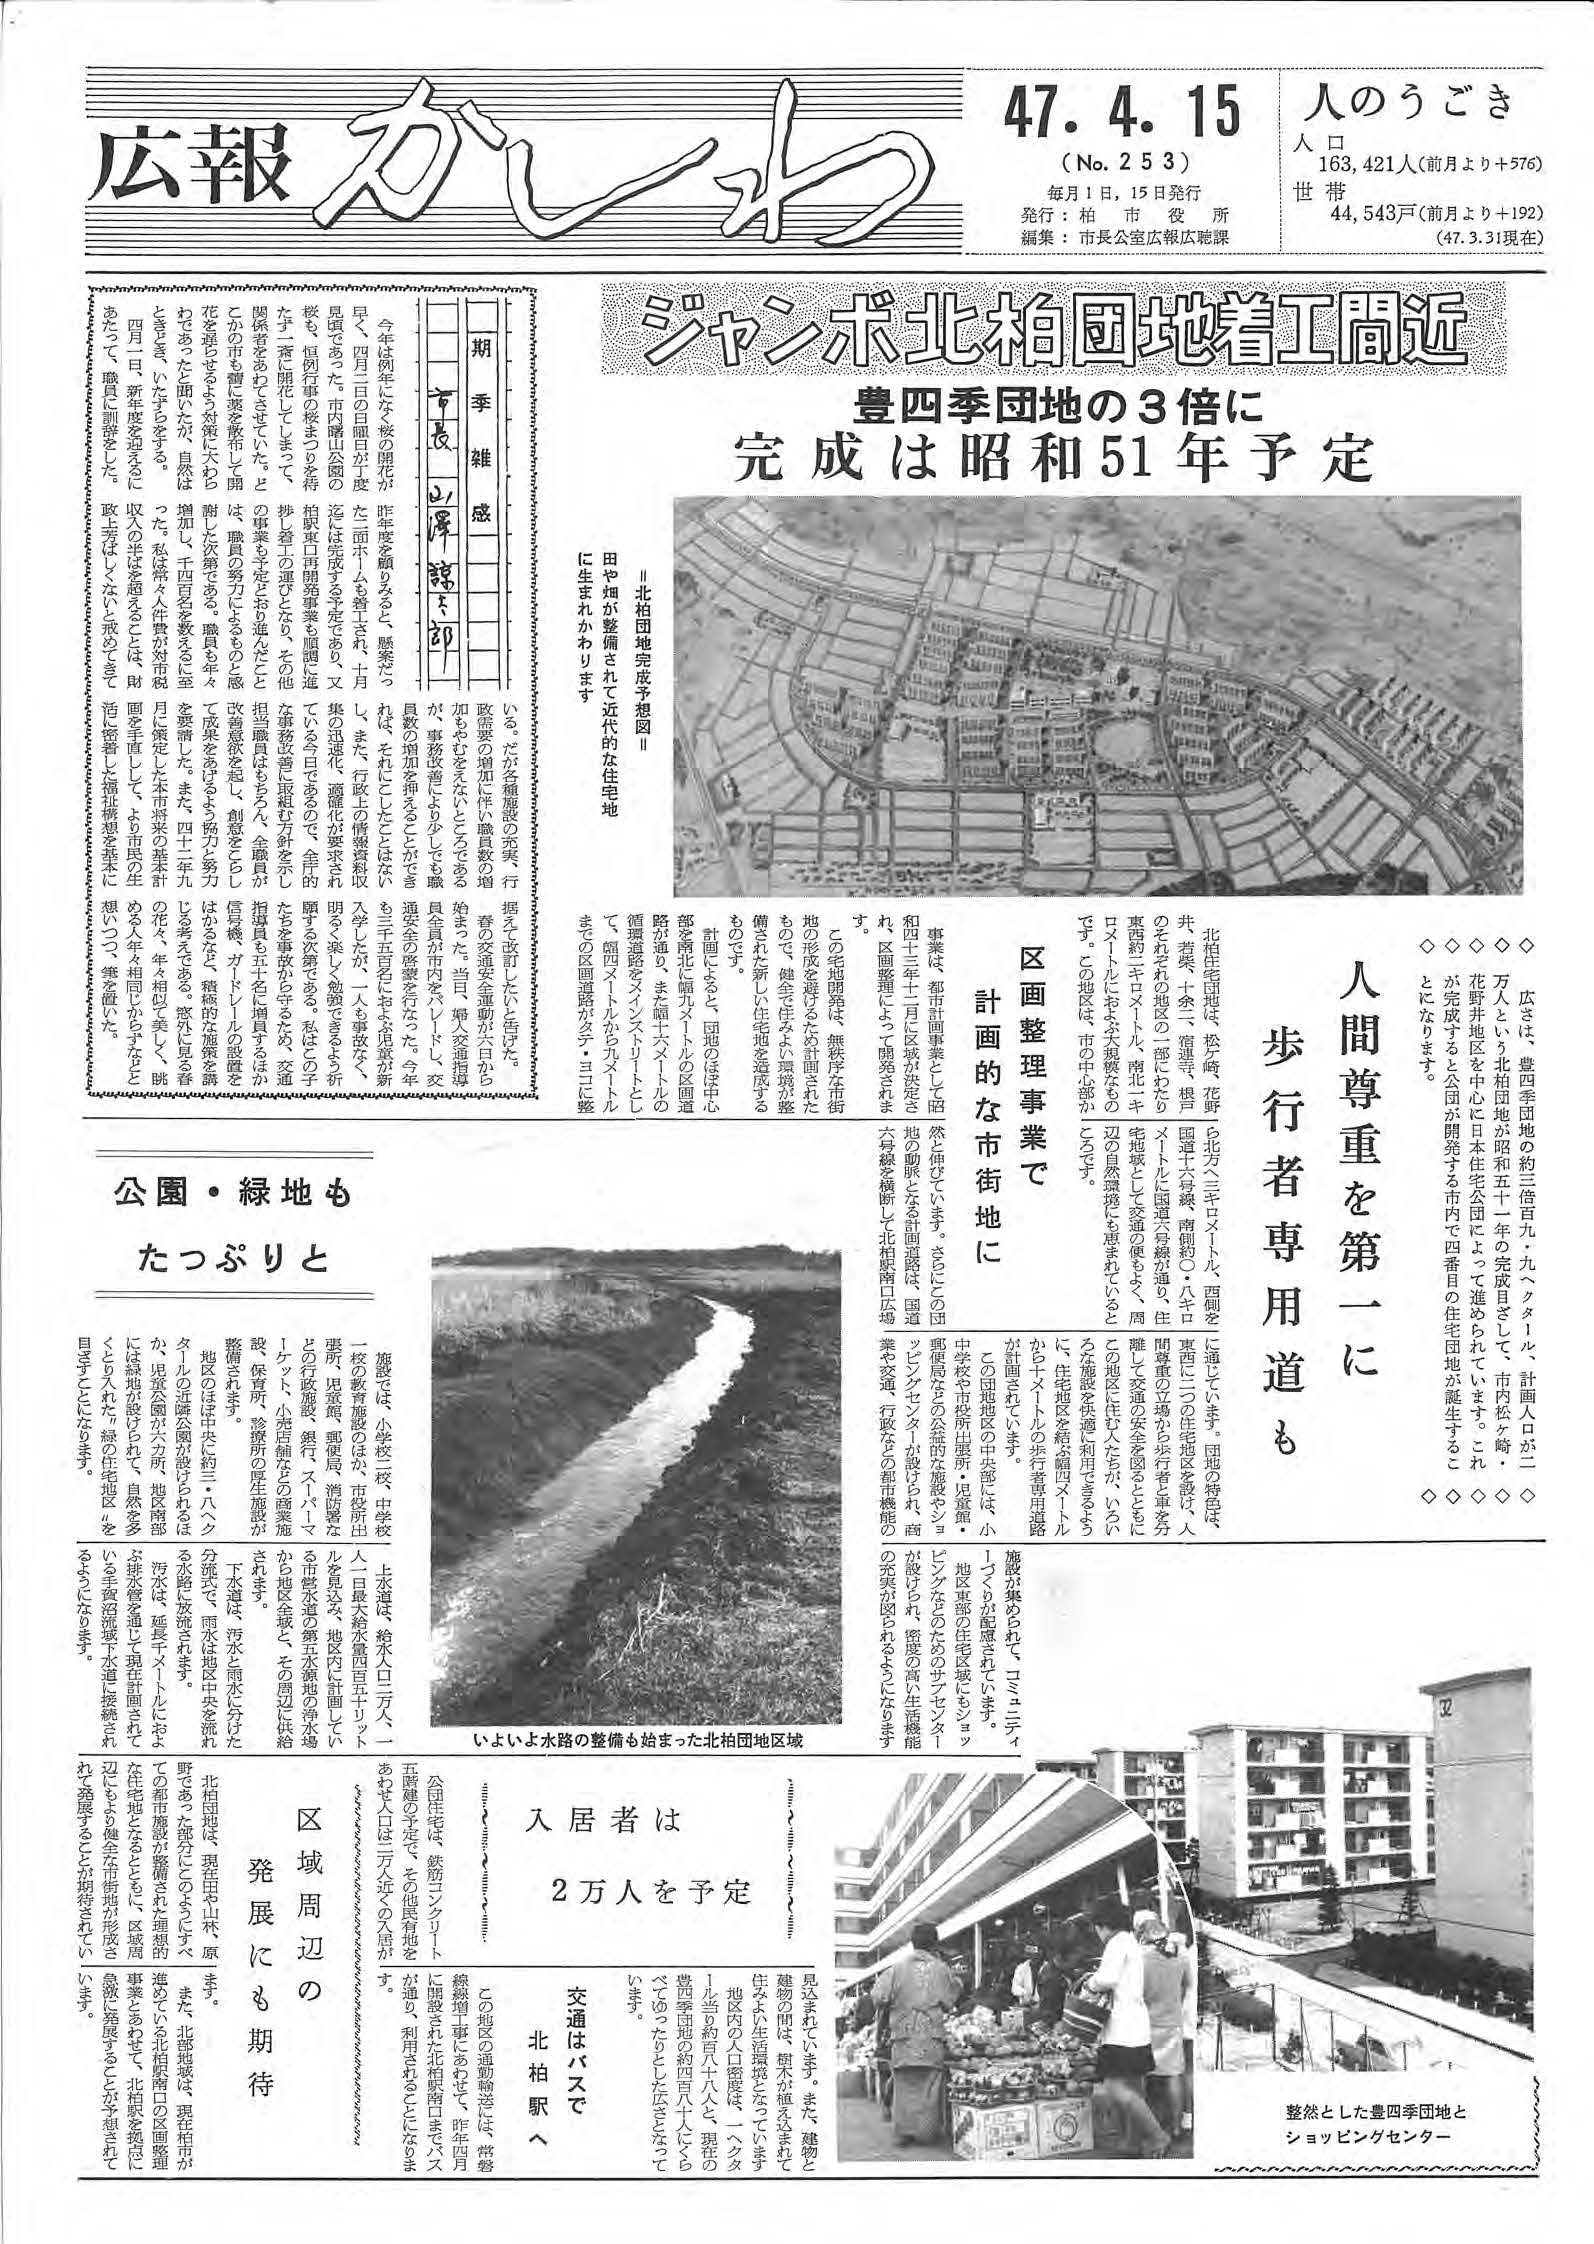 広報かしわ　昭和47年4月15日発行　253号